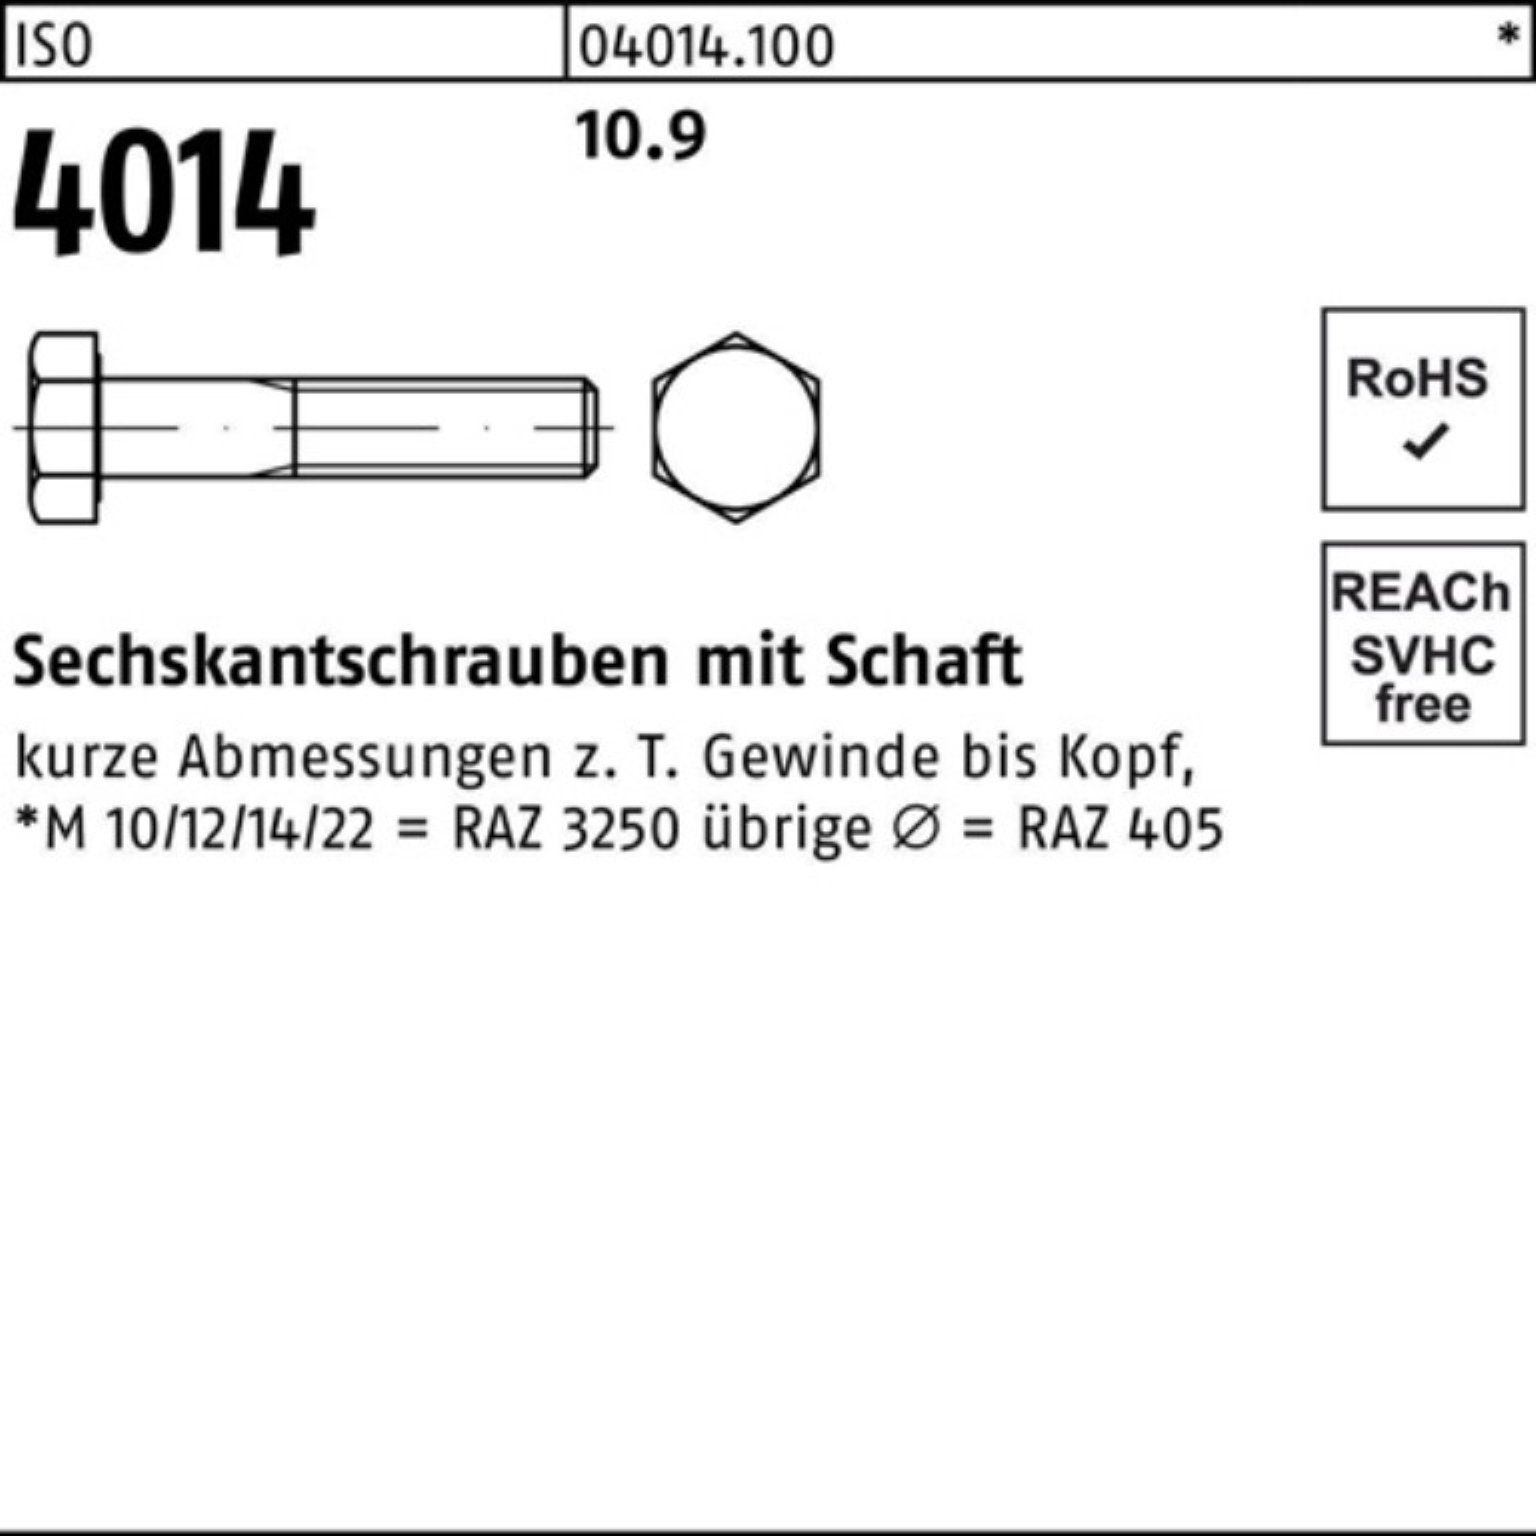 IS Sechskantschraube Schaft M18x 4014 Pack ISO Sechskantschraube Bufab Stück 300 100er 10.9 1